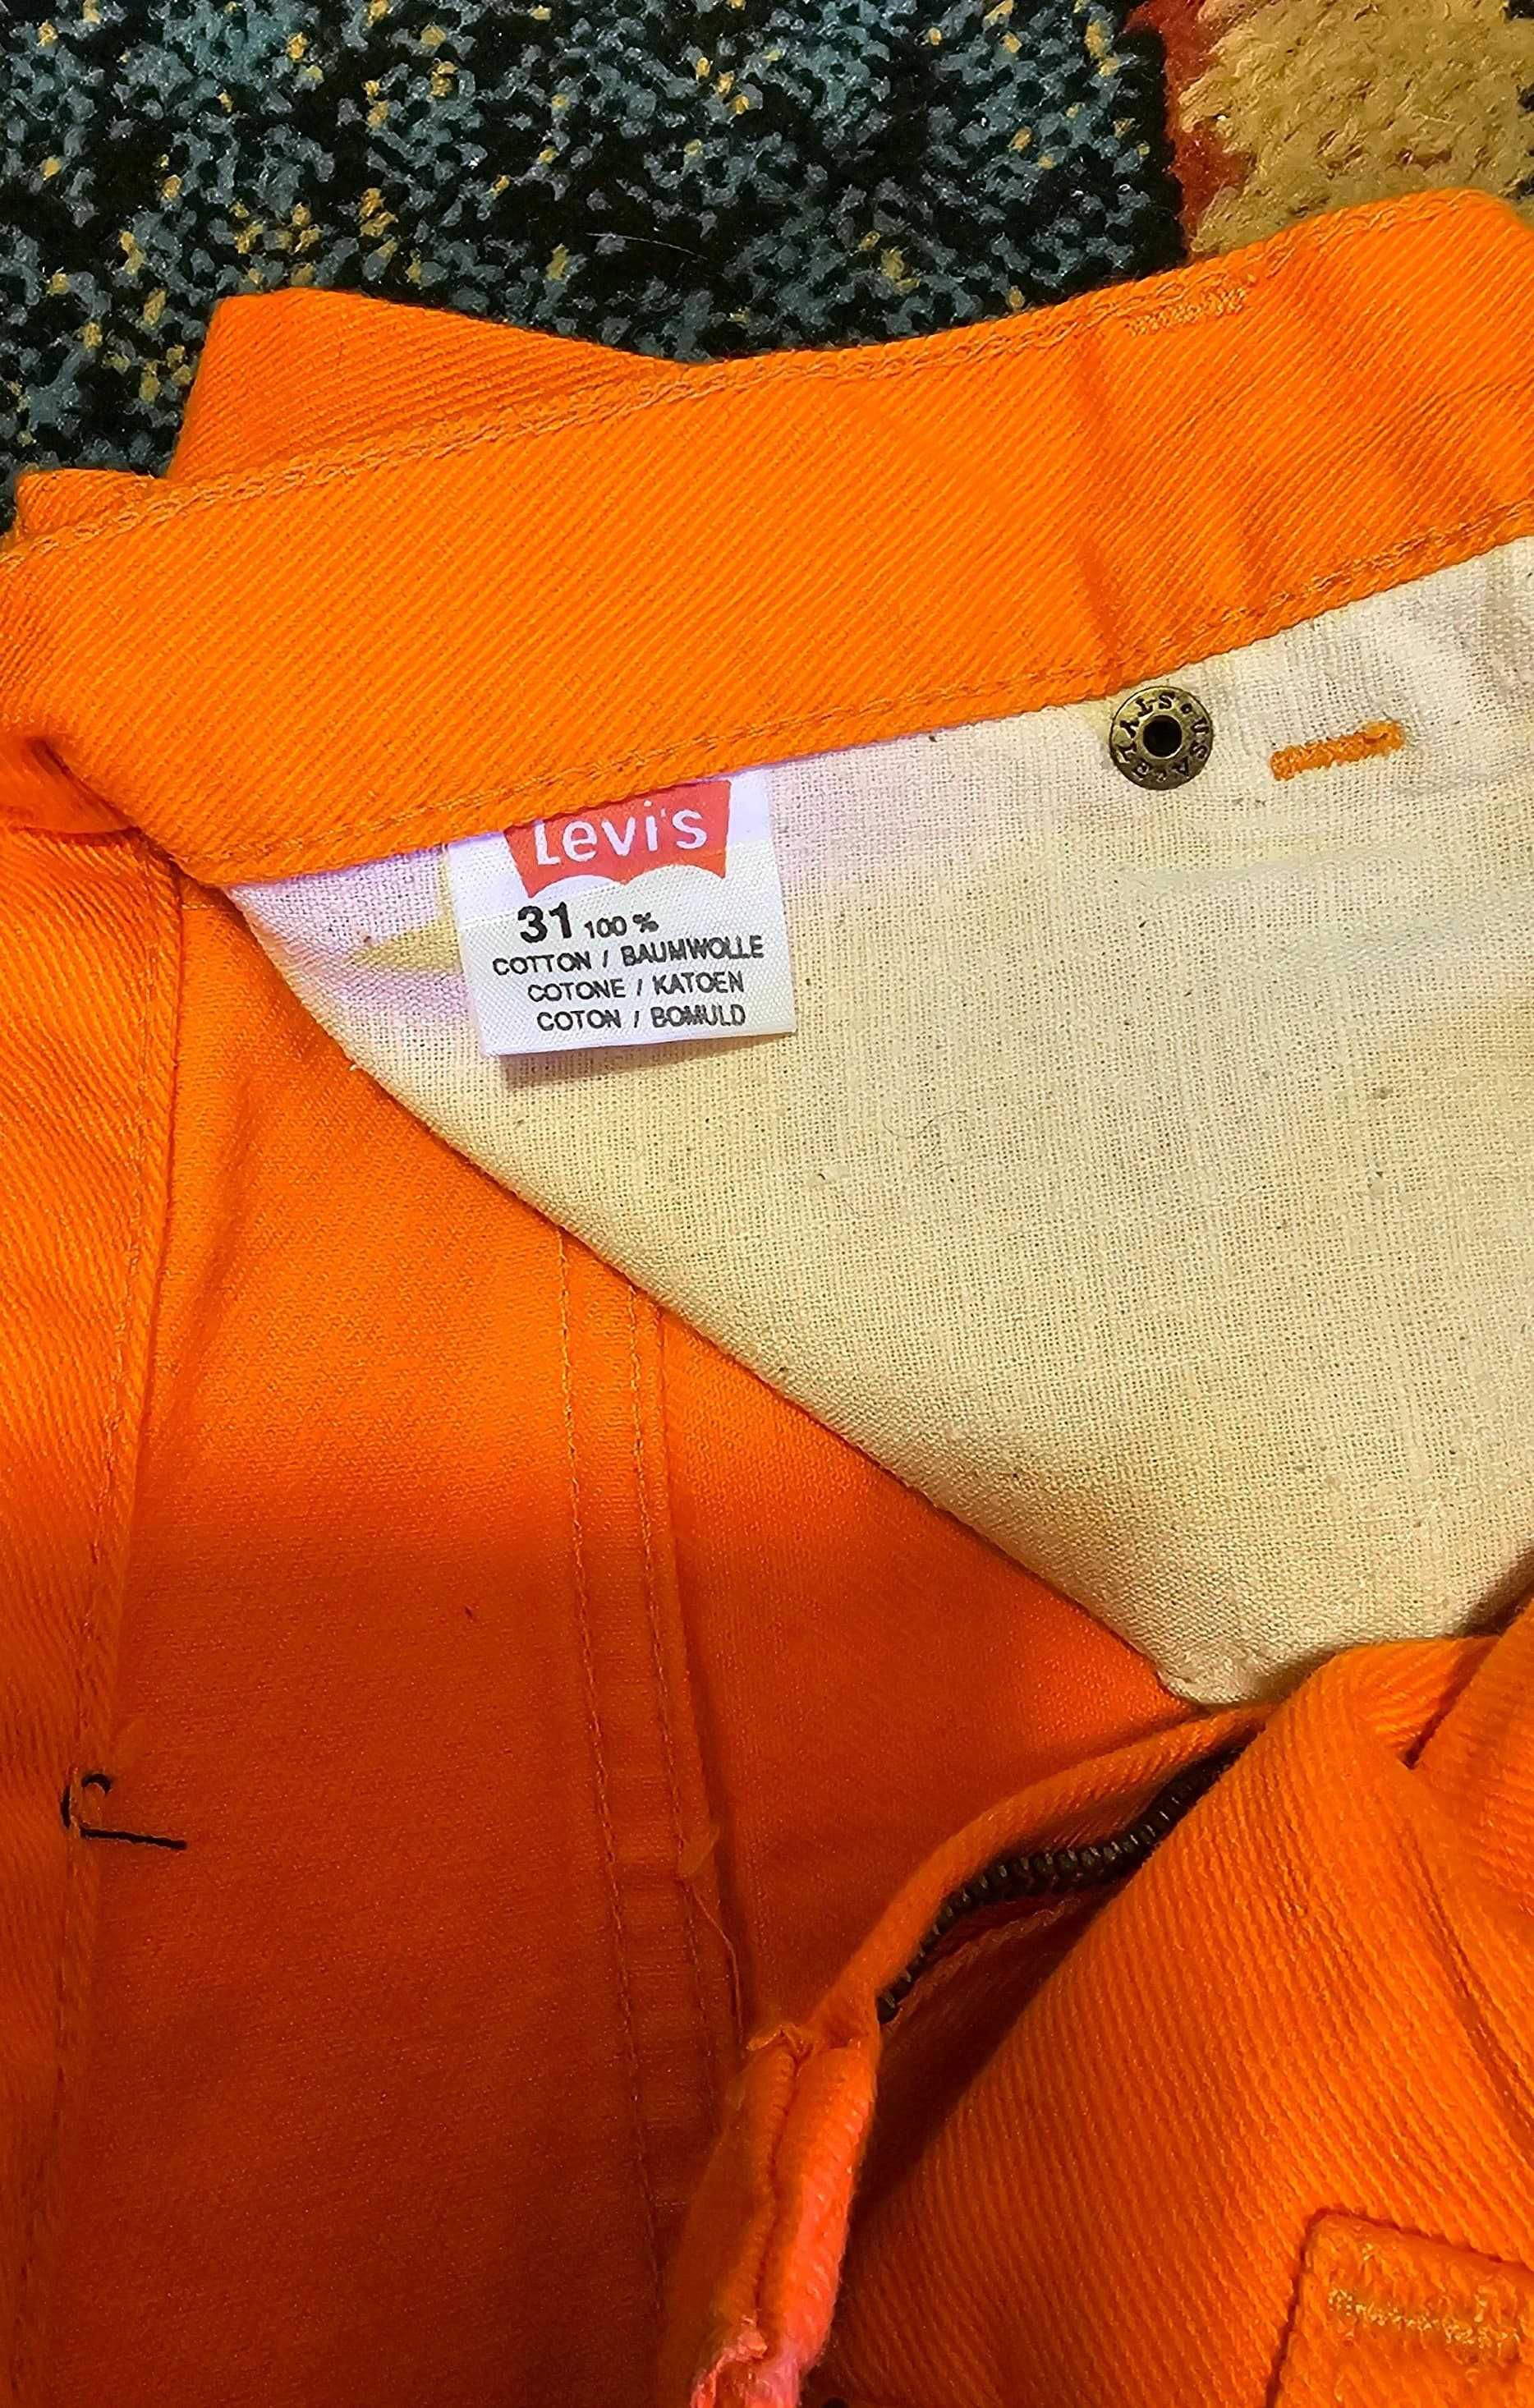 Blugi Levi's original 31, portocaliu, nou cu eticheta